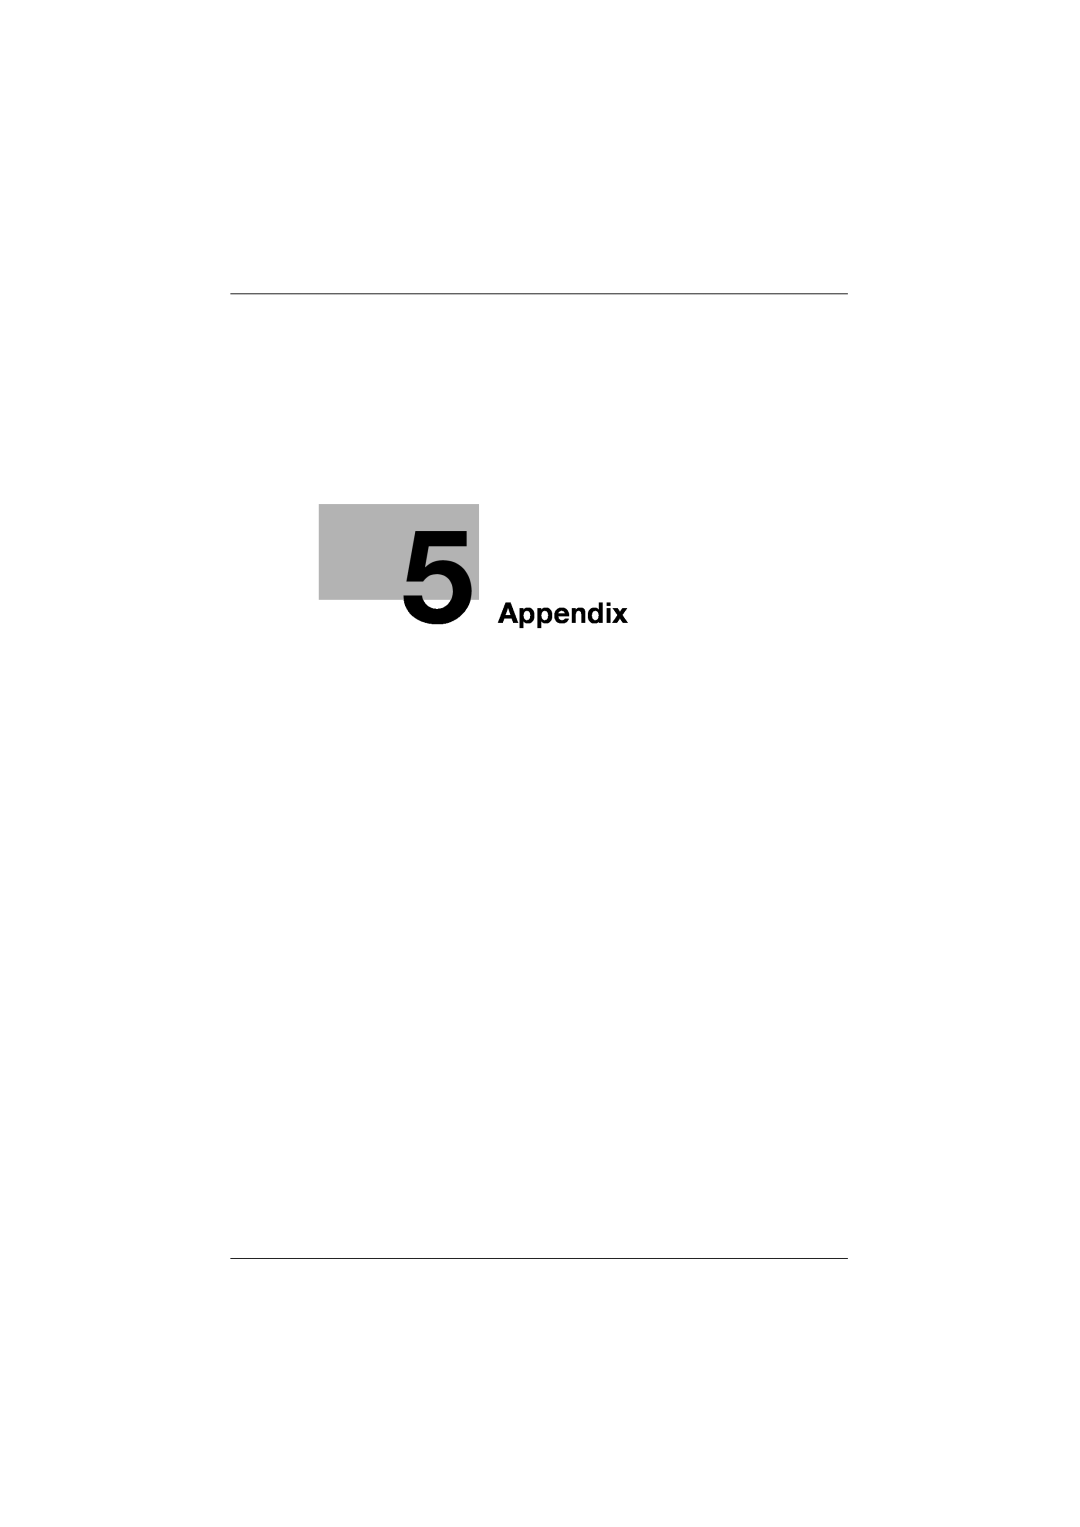 Konica Minolta 362, 282, 222 manual Appendix 